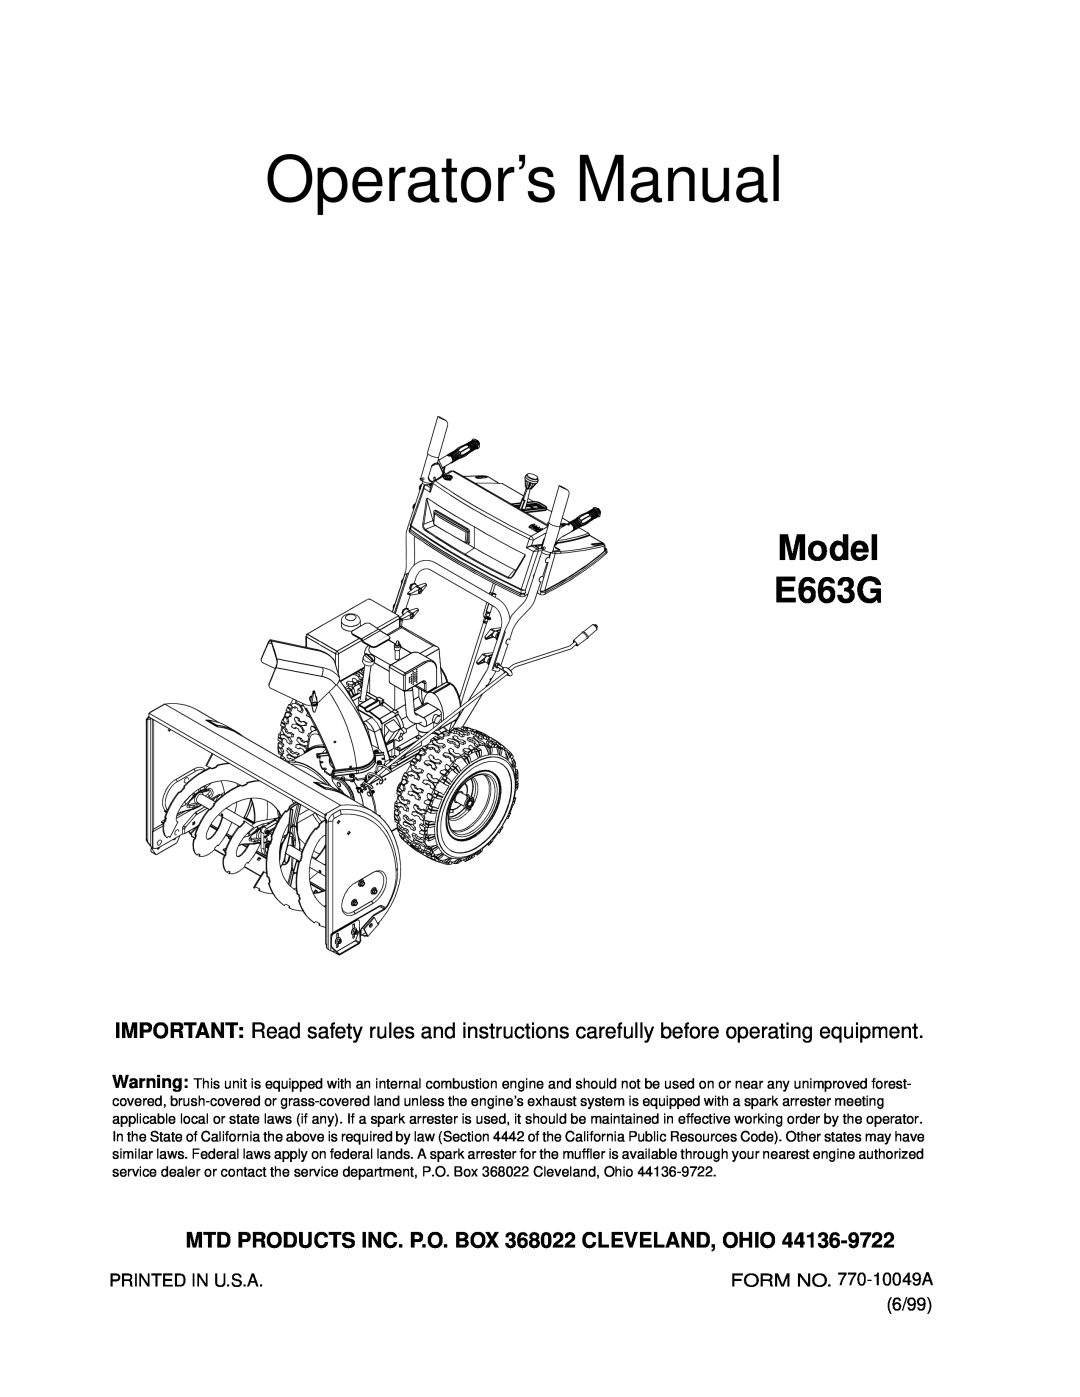 MTD manual Operator’s Manual, Model E663G, MTD PRODUCTS INC. P.O. BOX 368022 CLEVELAND, OHIO 